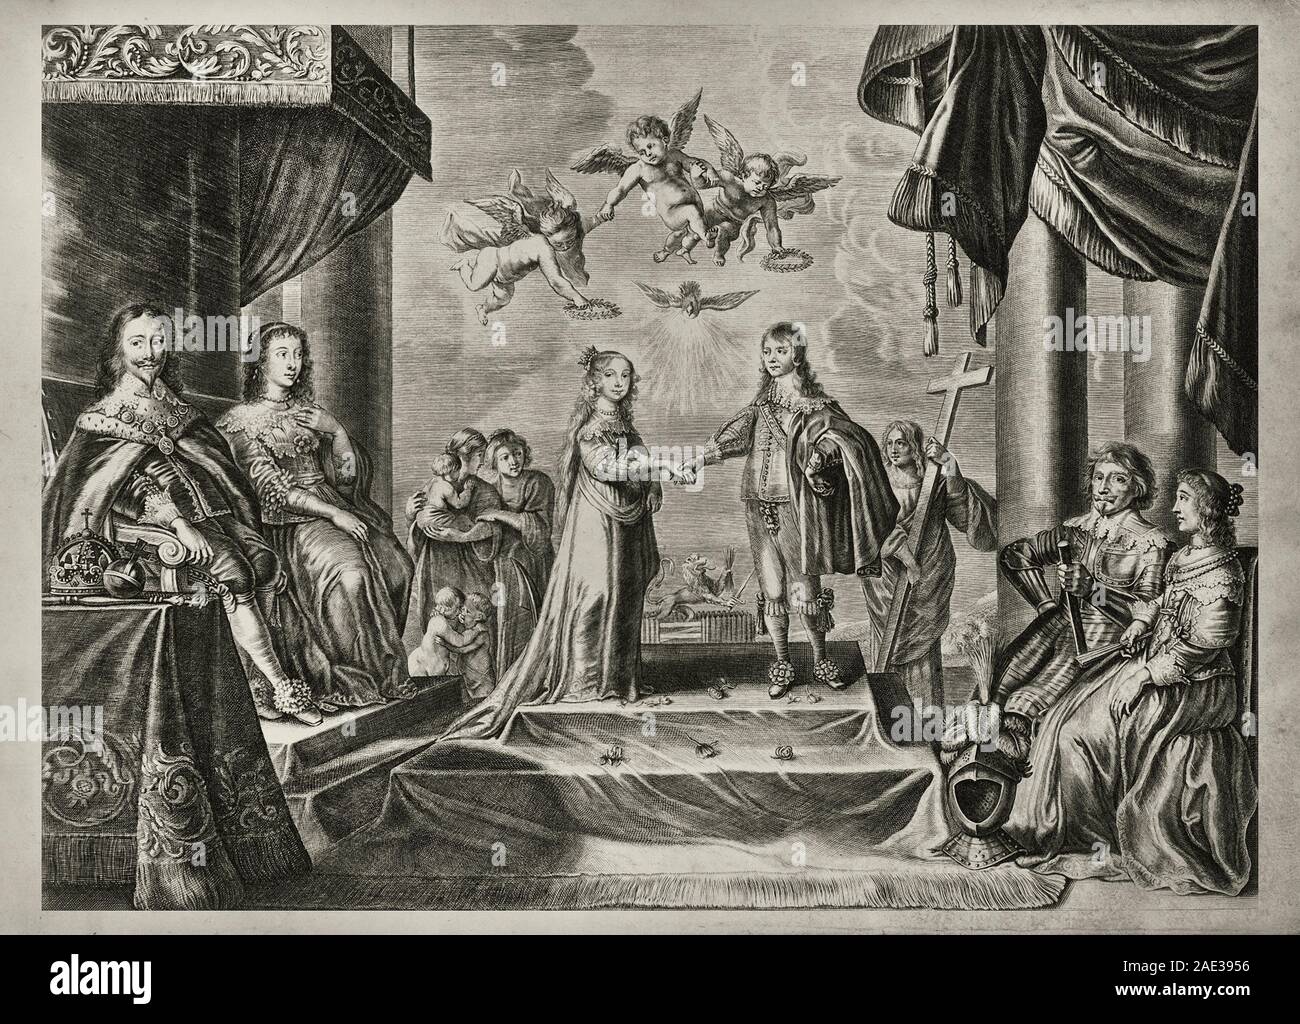 Incisione di Guglielmo II (1792 - 1849), Re dei Paesi Bassi, il Granduca del Lussemburgo. Foto Stock